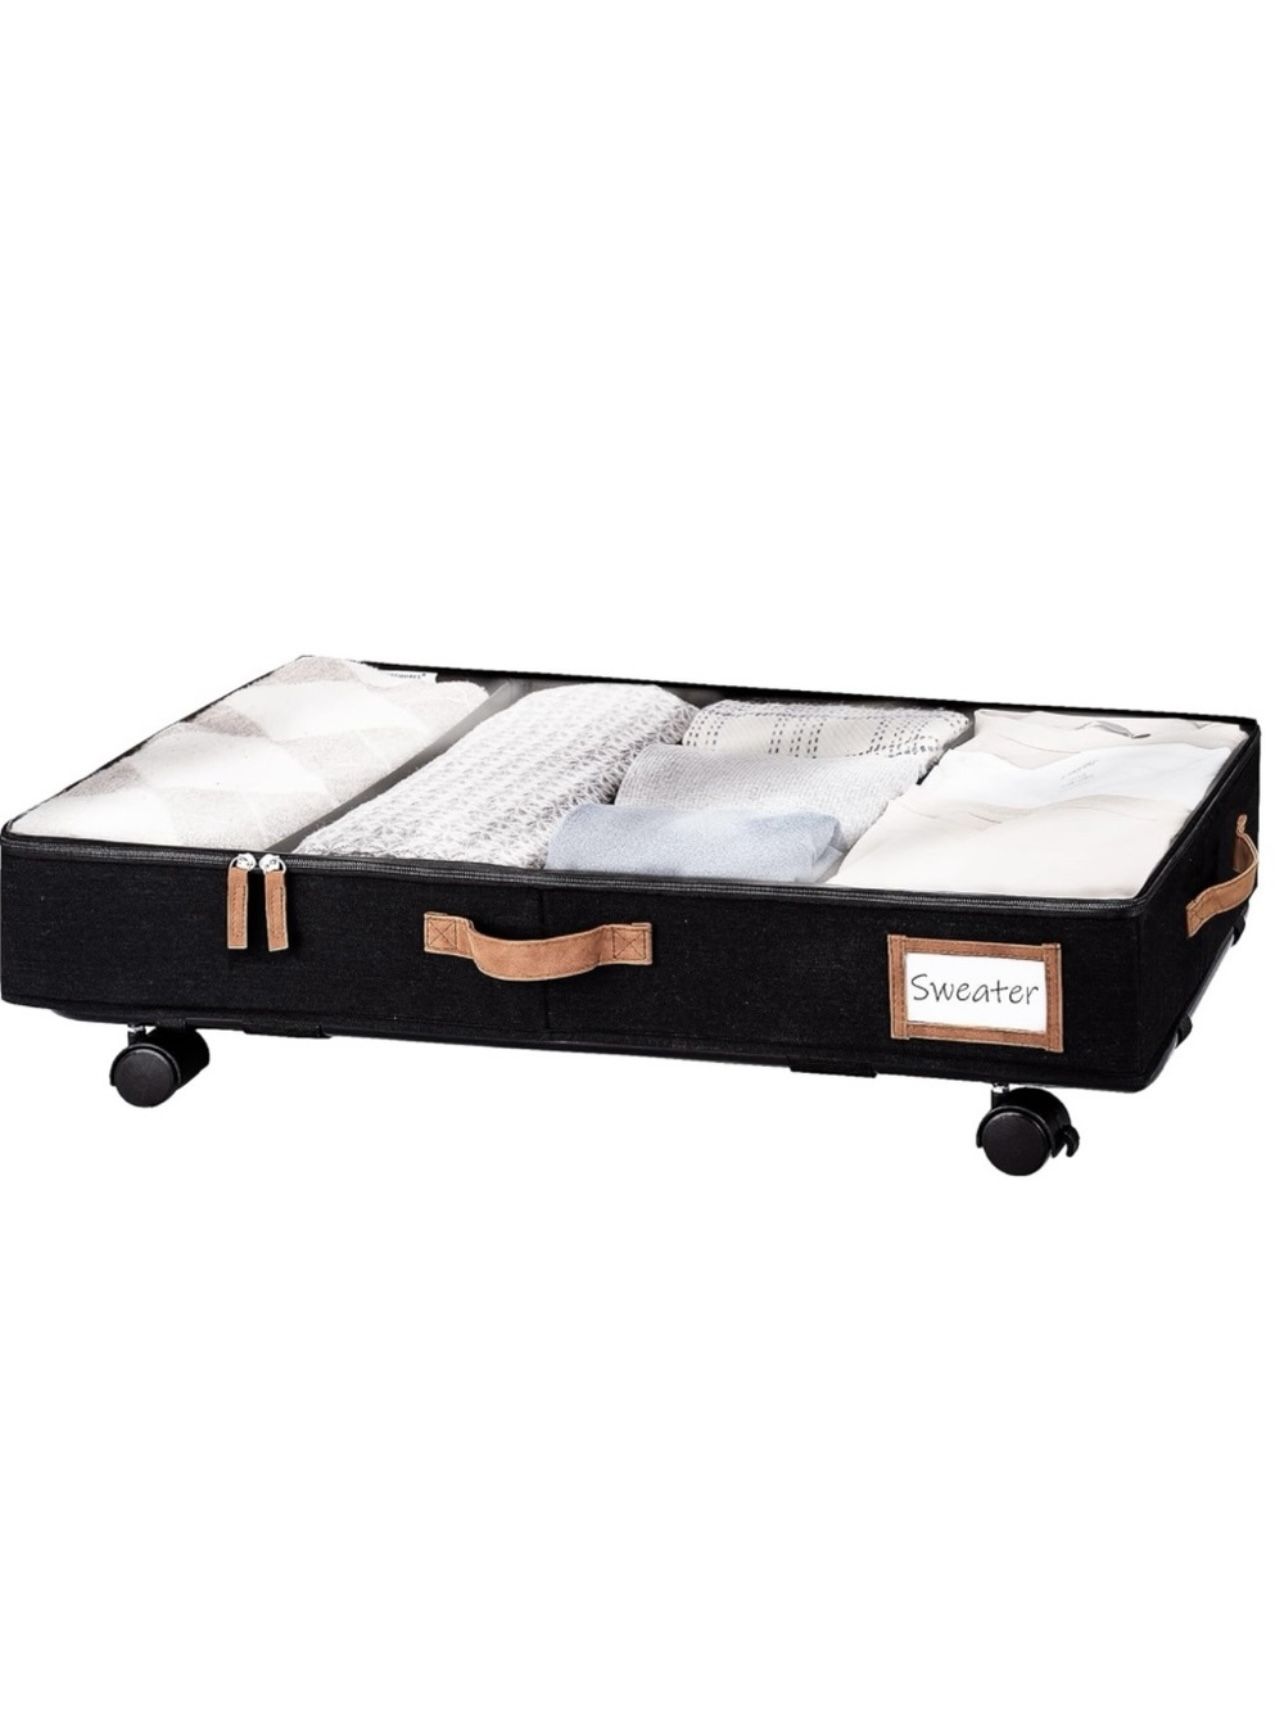 StorageWorks Under Bed Storage with Wheels & Handles Clothes & Blanket Organizer